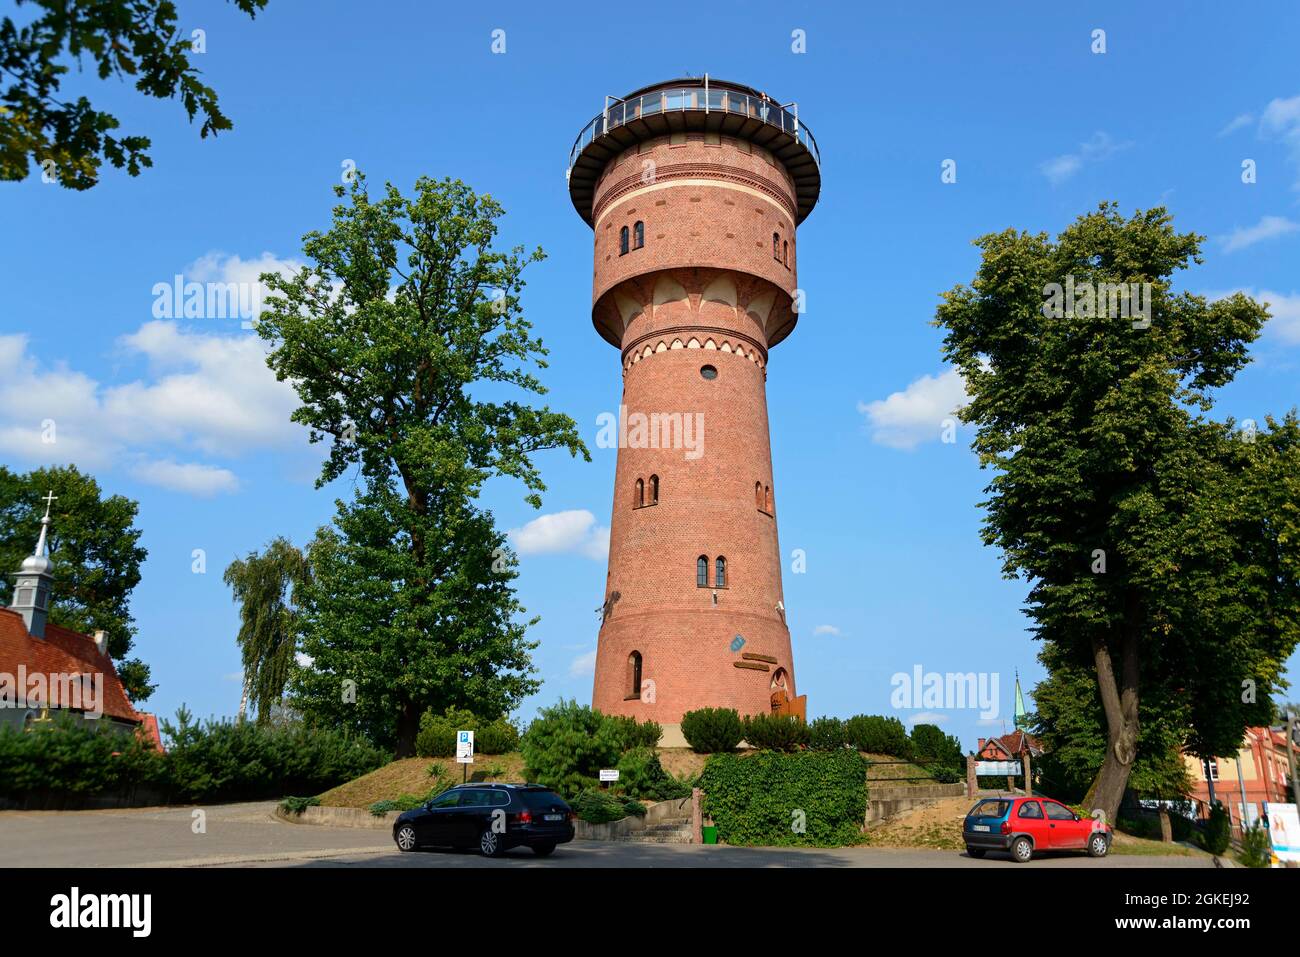 Museum and Cafe, Water Tower, Gizycko, Warmia-Masuria, Loetzen, Warminsko-Mazurskie, Poland Stock Photo